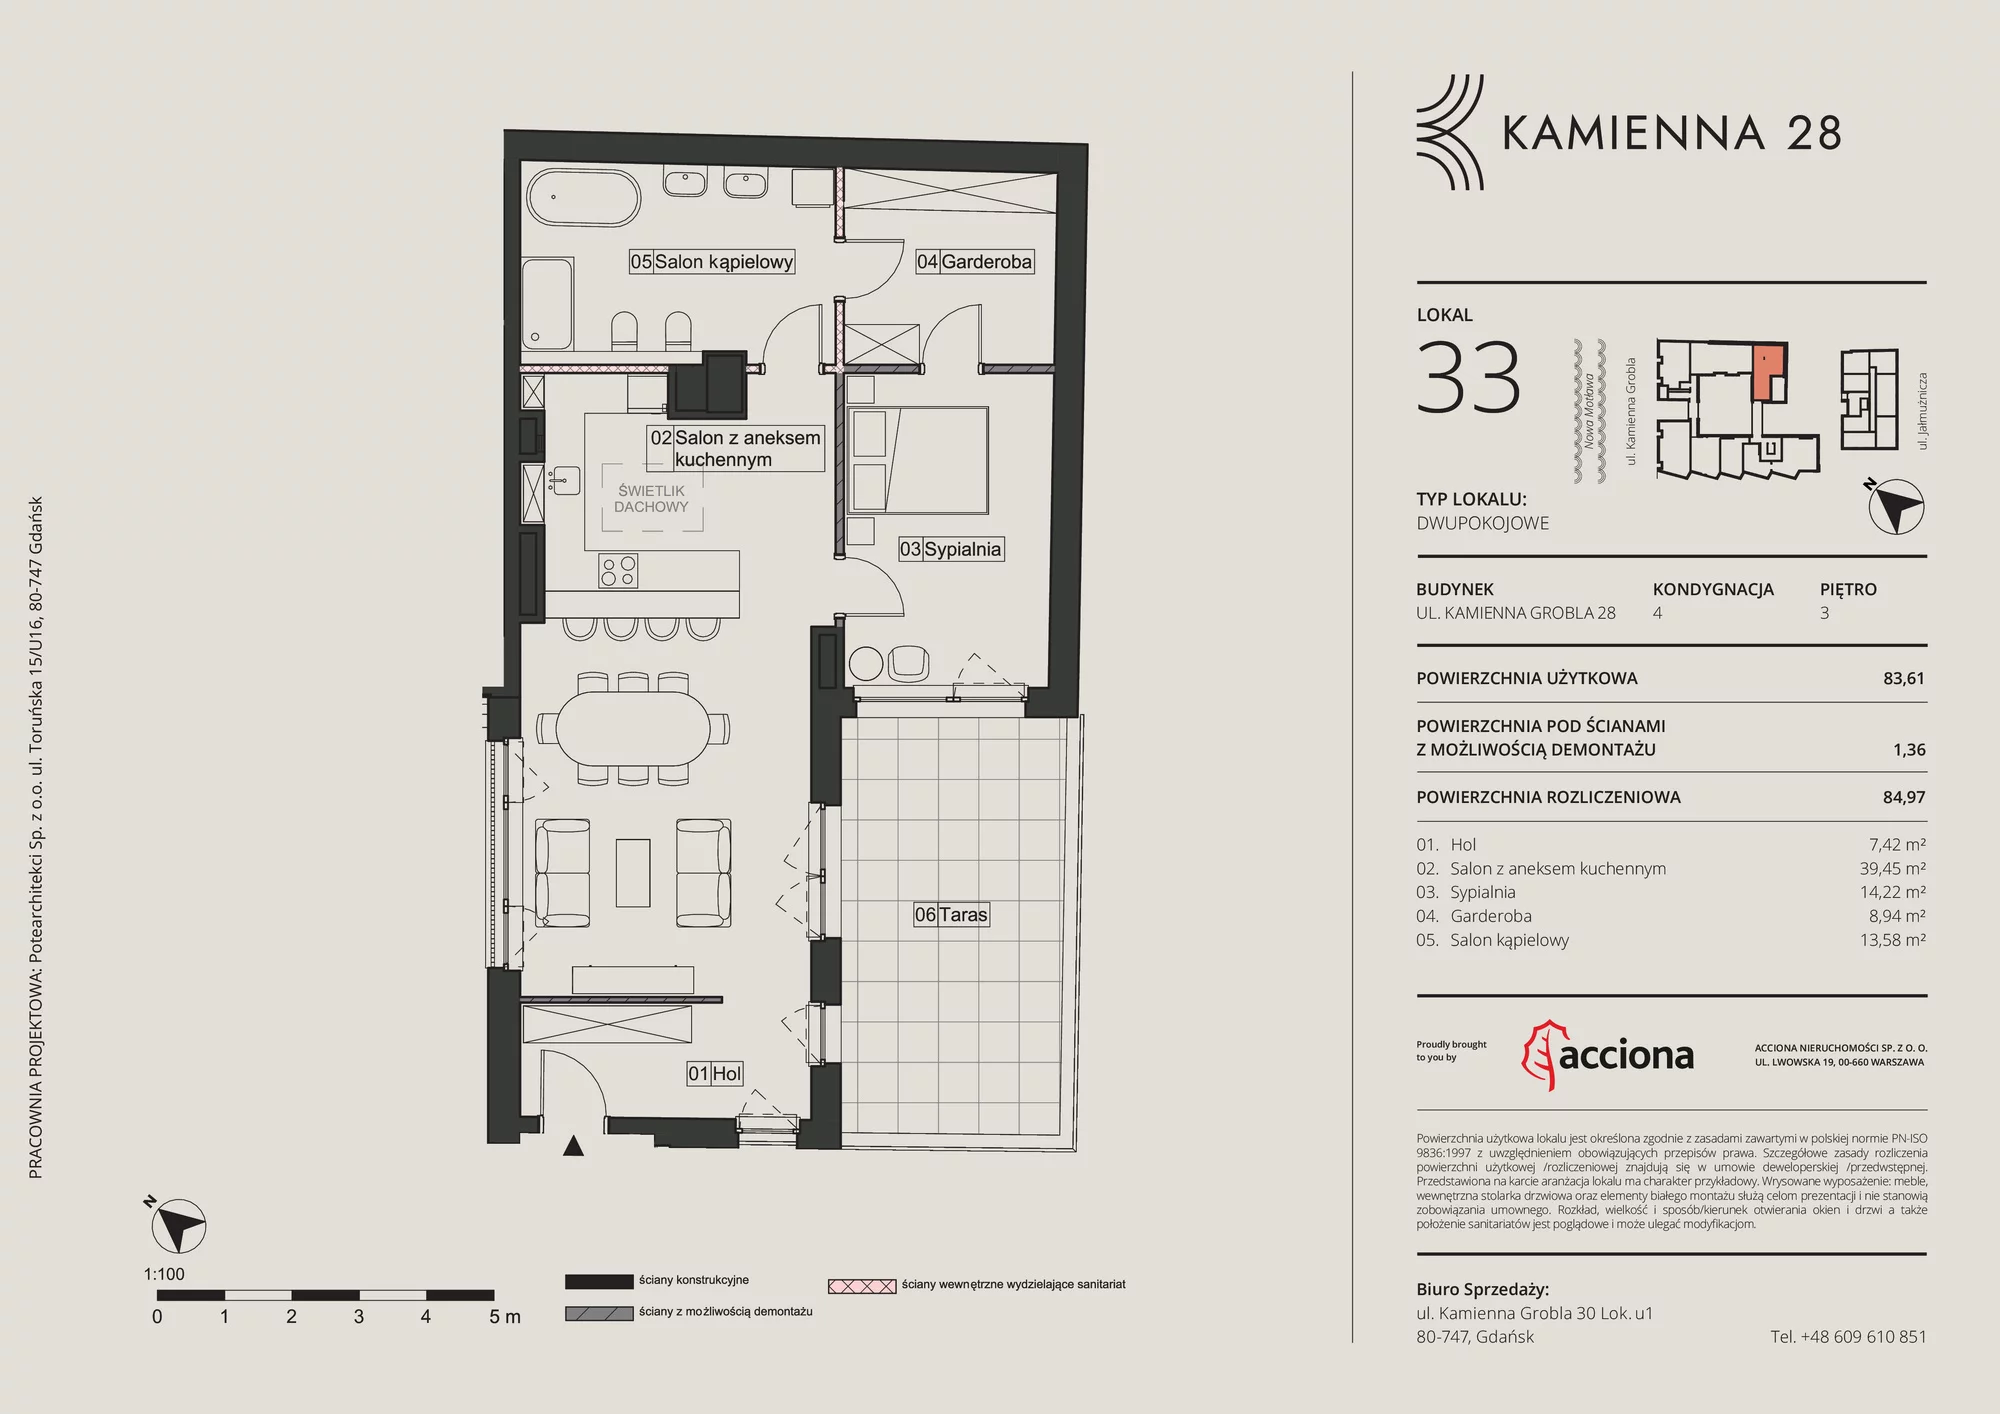 Apartament 84,97 m², piętro 3, oferta nr 28.33, Kamienna 28, Gdańsk, Śródmieście, Dolne Miasto, ul. Kamienna Grobla 28/29